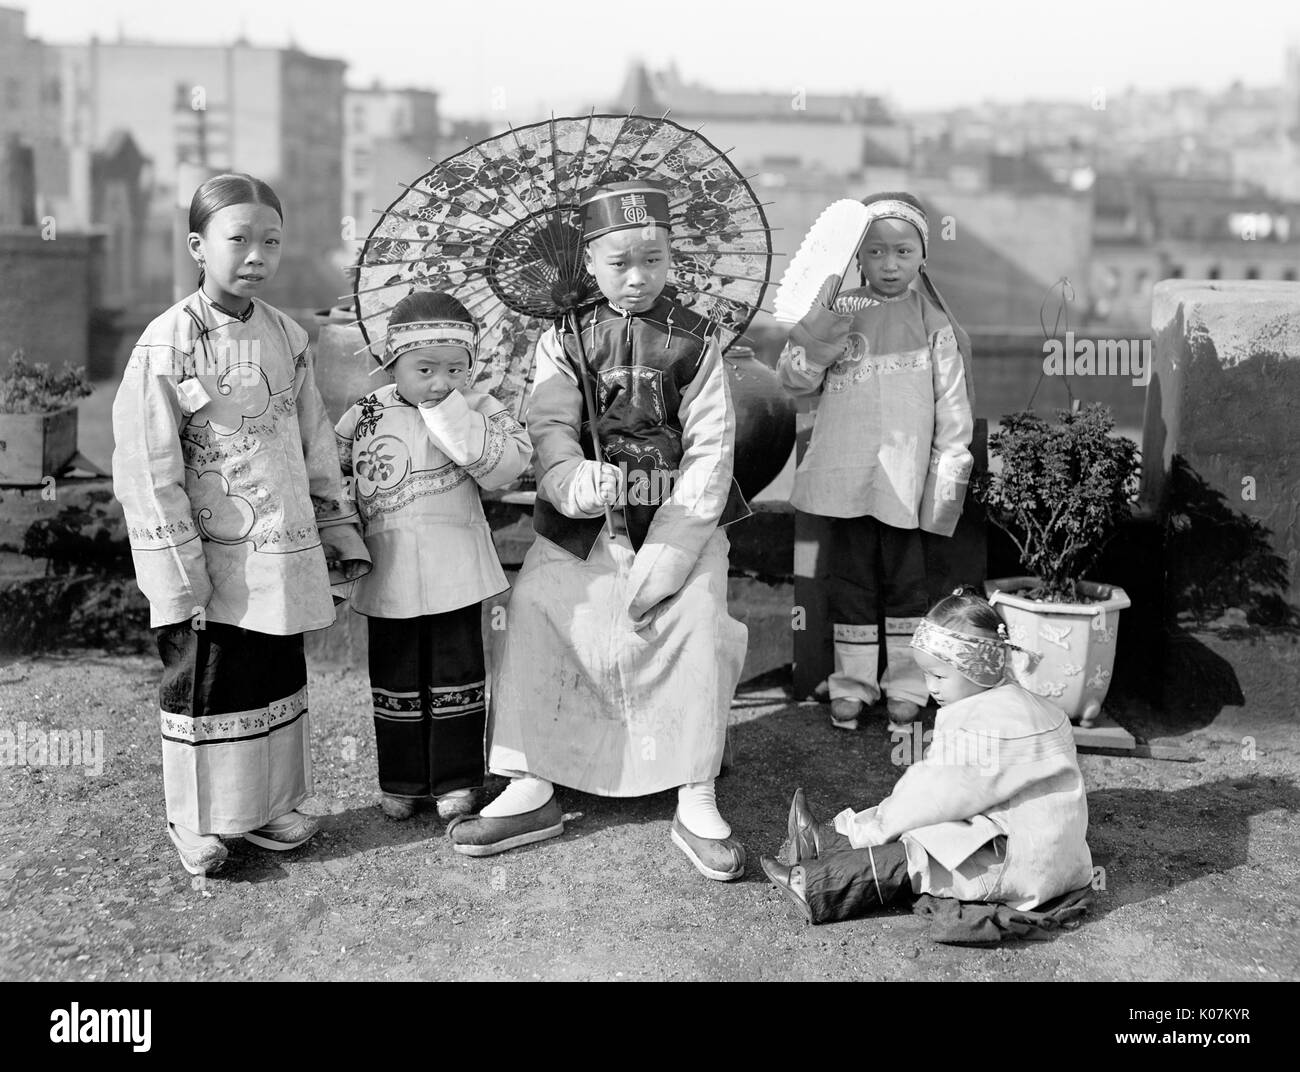 Niños disfrazados en Imágenes de stock en blanco y negro - Alamy